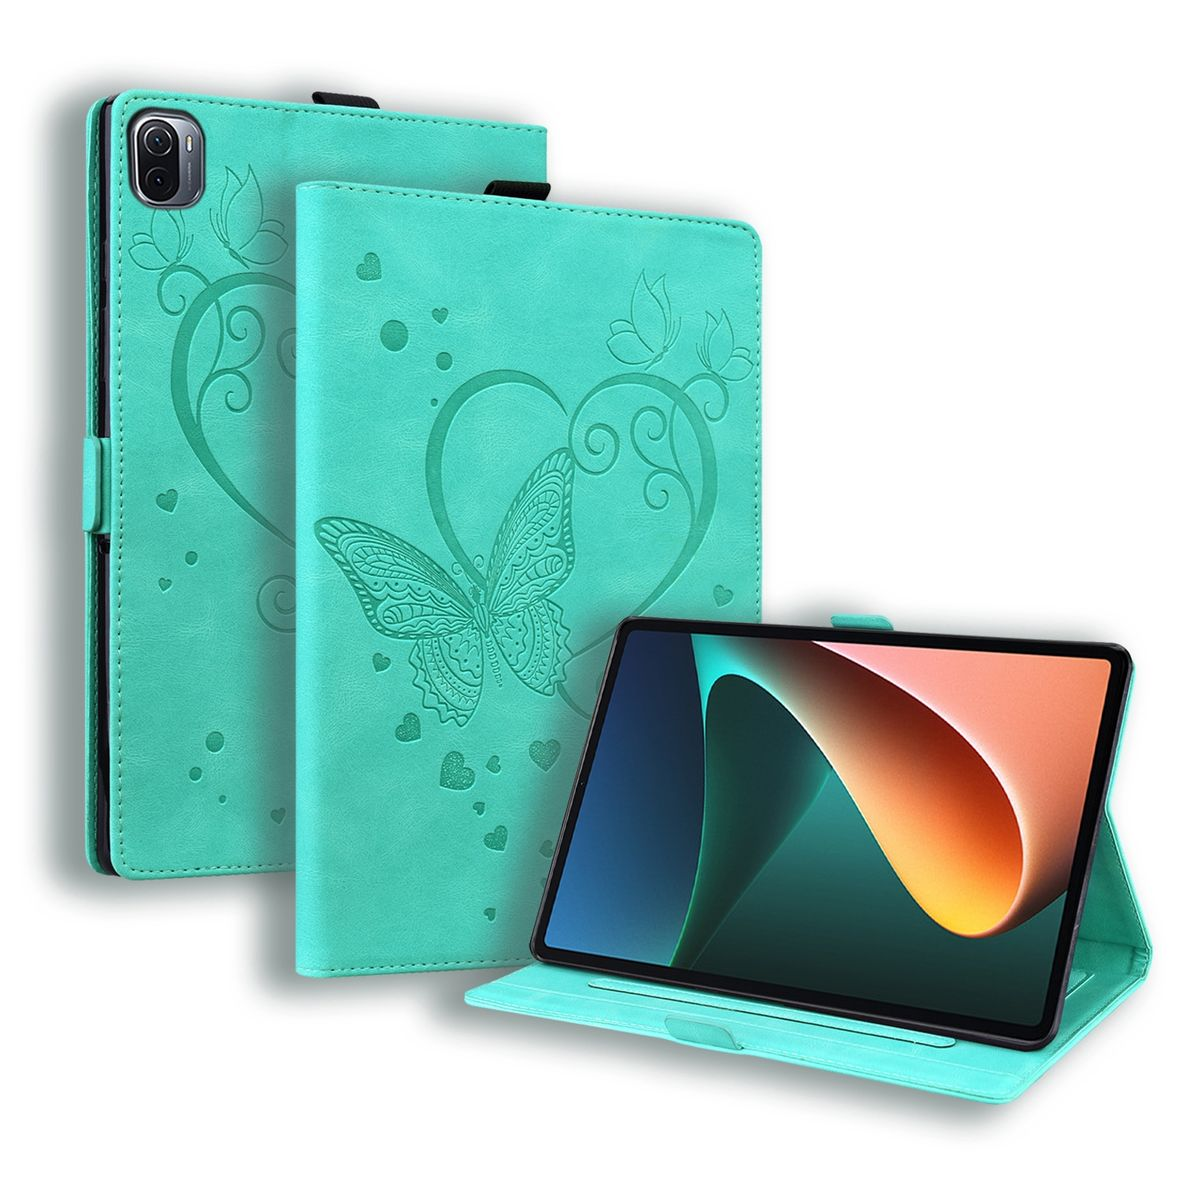 WIGENTO Schmetterling Muster Design Tasche / Wake mit Full UP Grün Cover, aufstellbar Sleep Xiaomi, Pro, Pad Funktion, 5 Pad 5